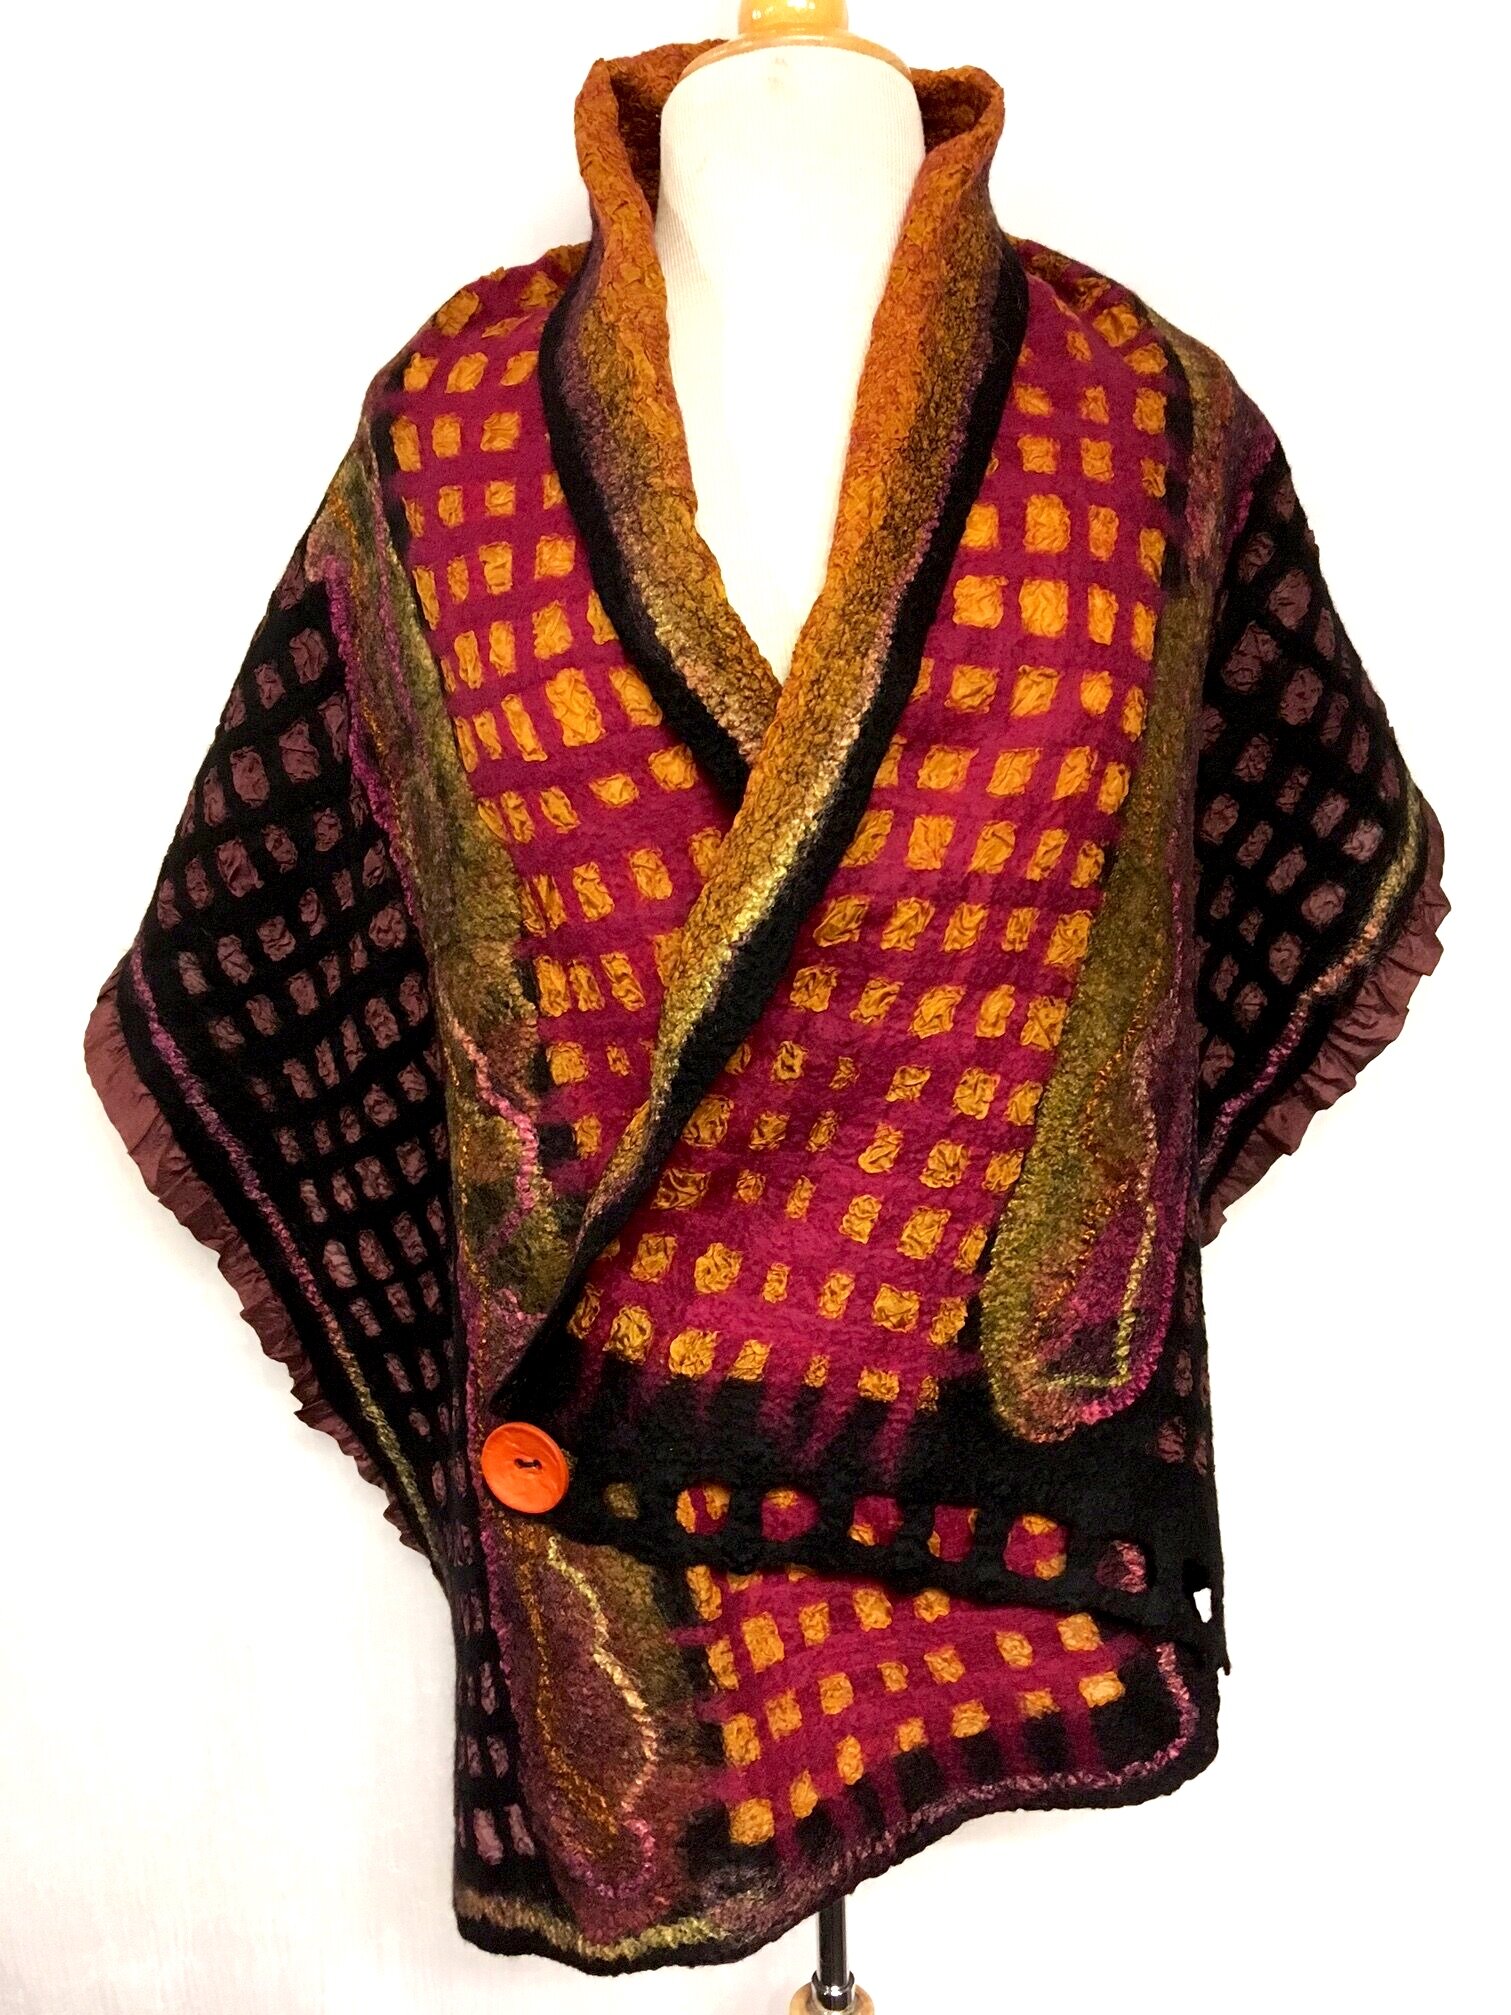 Shawl: $350, 20"x64", Nuno felt, silk & wool